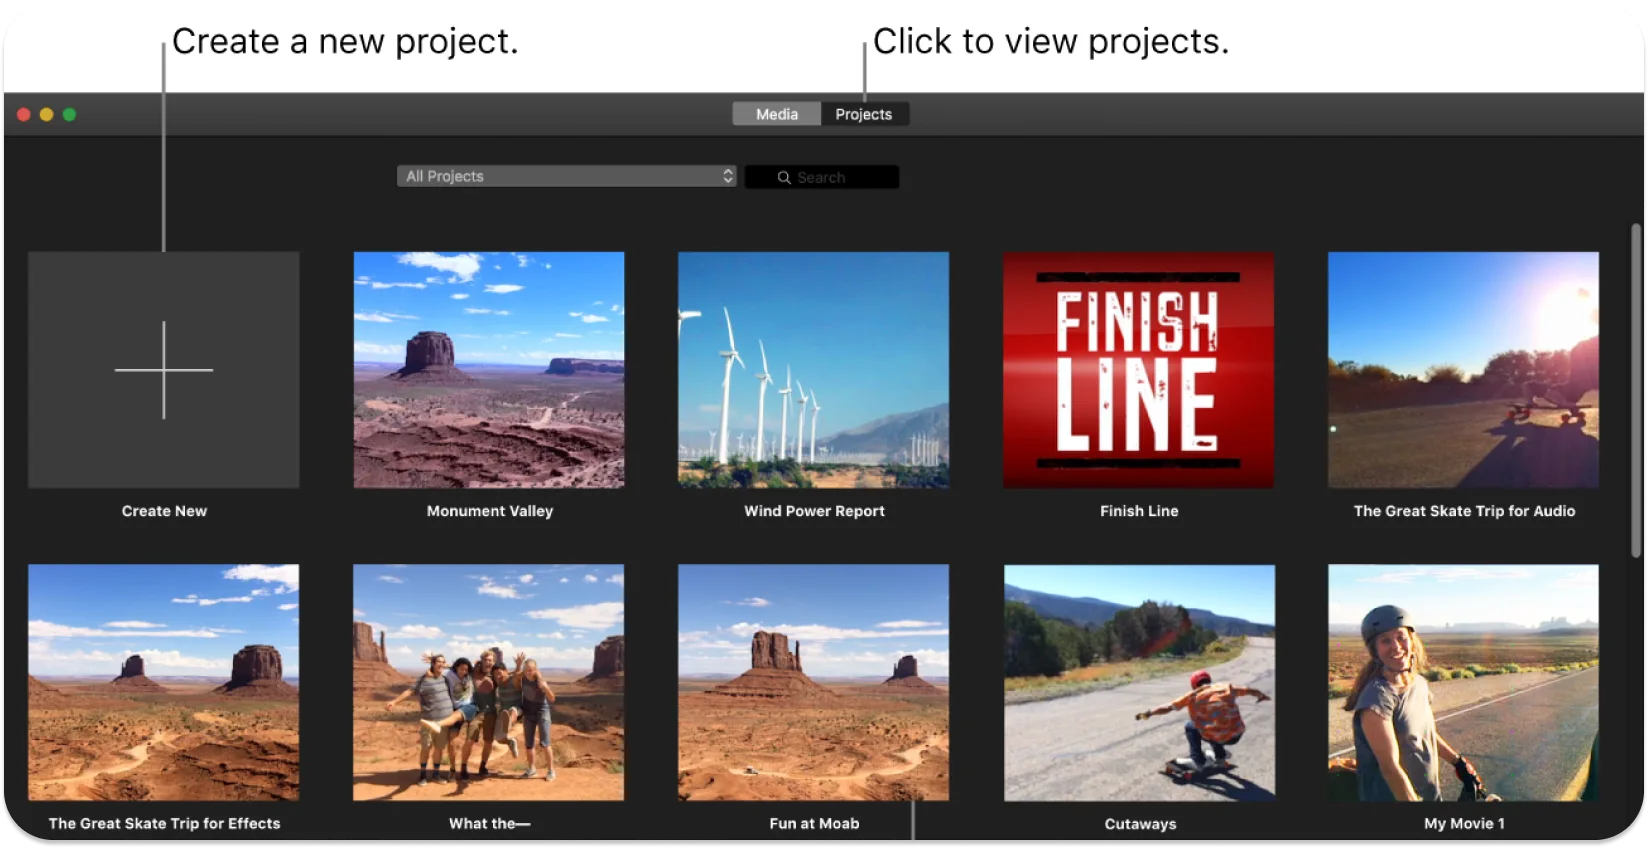 iMovie इंटरफ़ेस वीडियो प्रोजेक्ट थंबनेल की एक सरणी प्रदर्शित करता है, एक नया प्रोजेक्ट बनाने या किसी मौजूदा को खोलने के संकेत के साथ।
